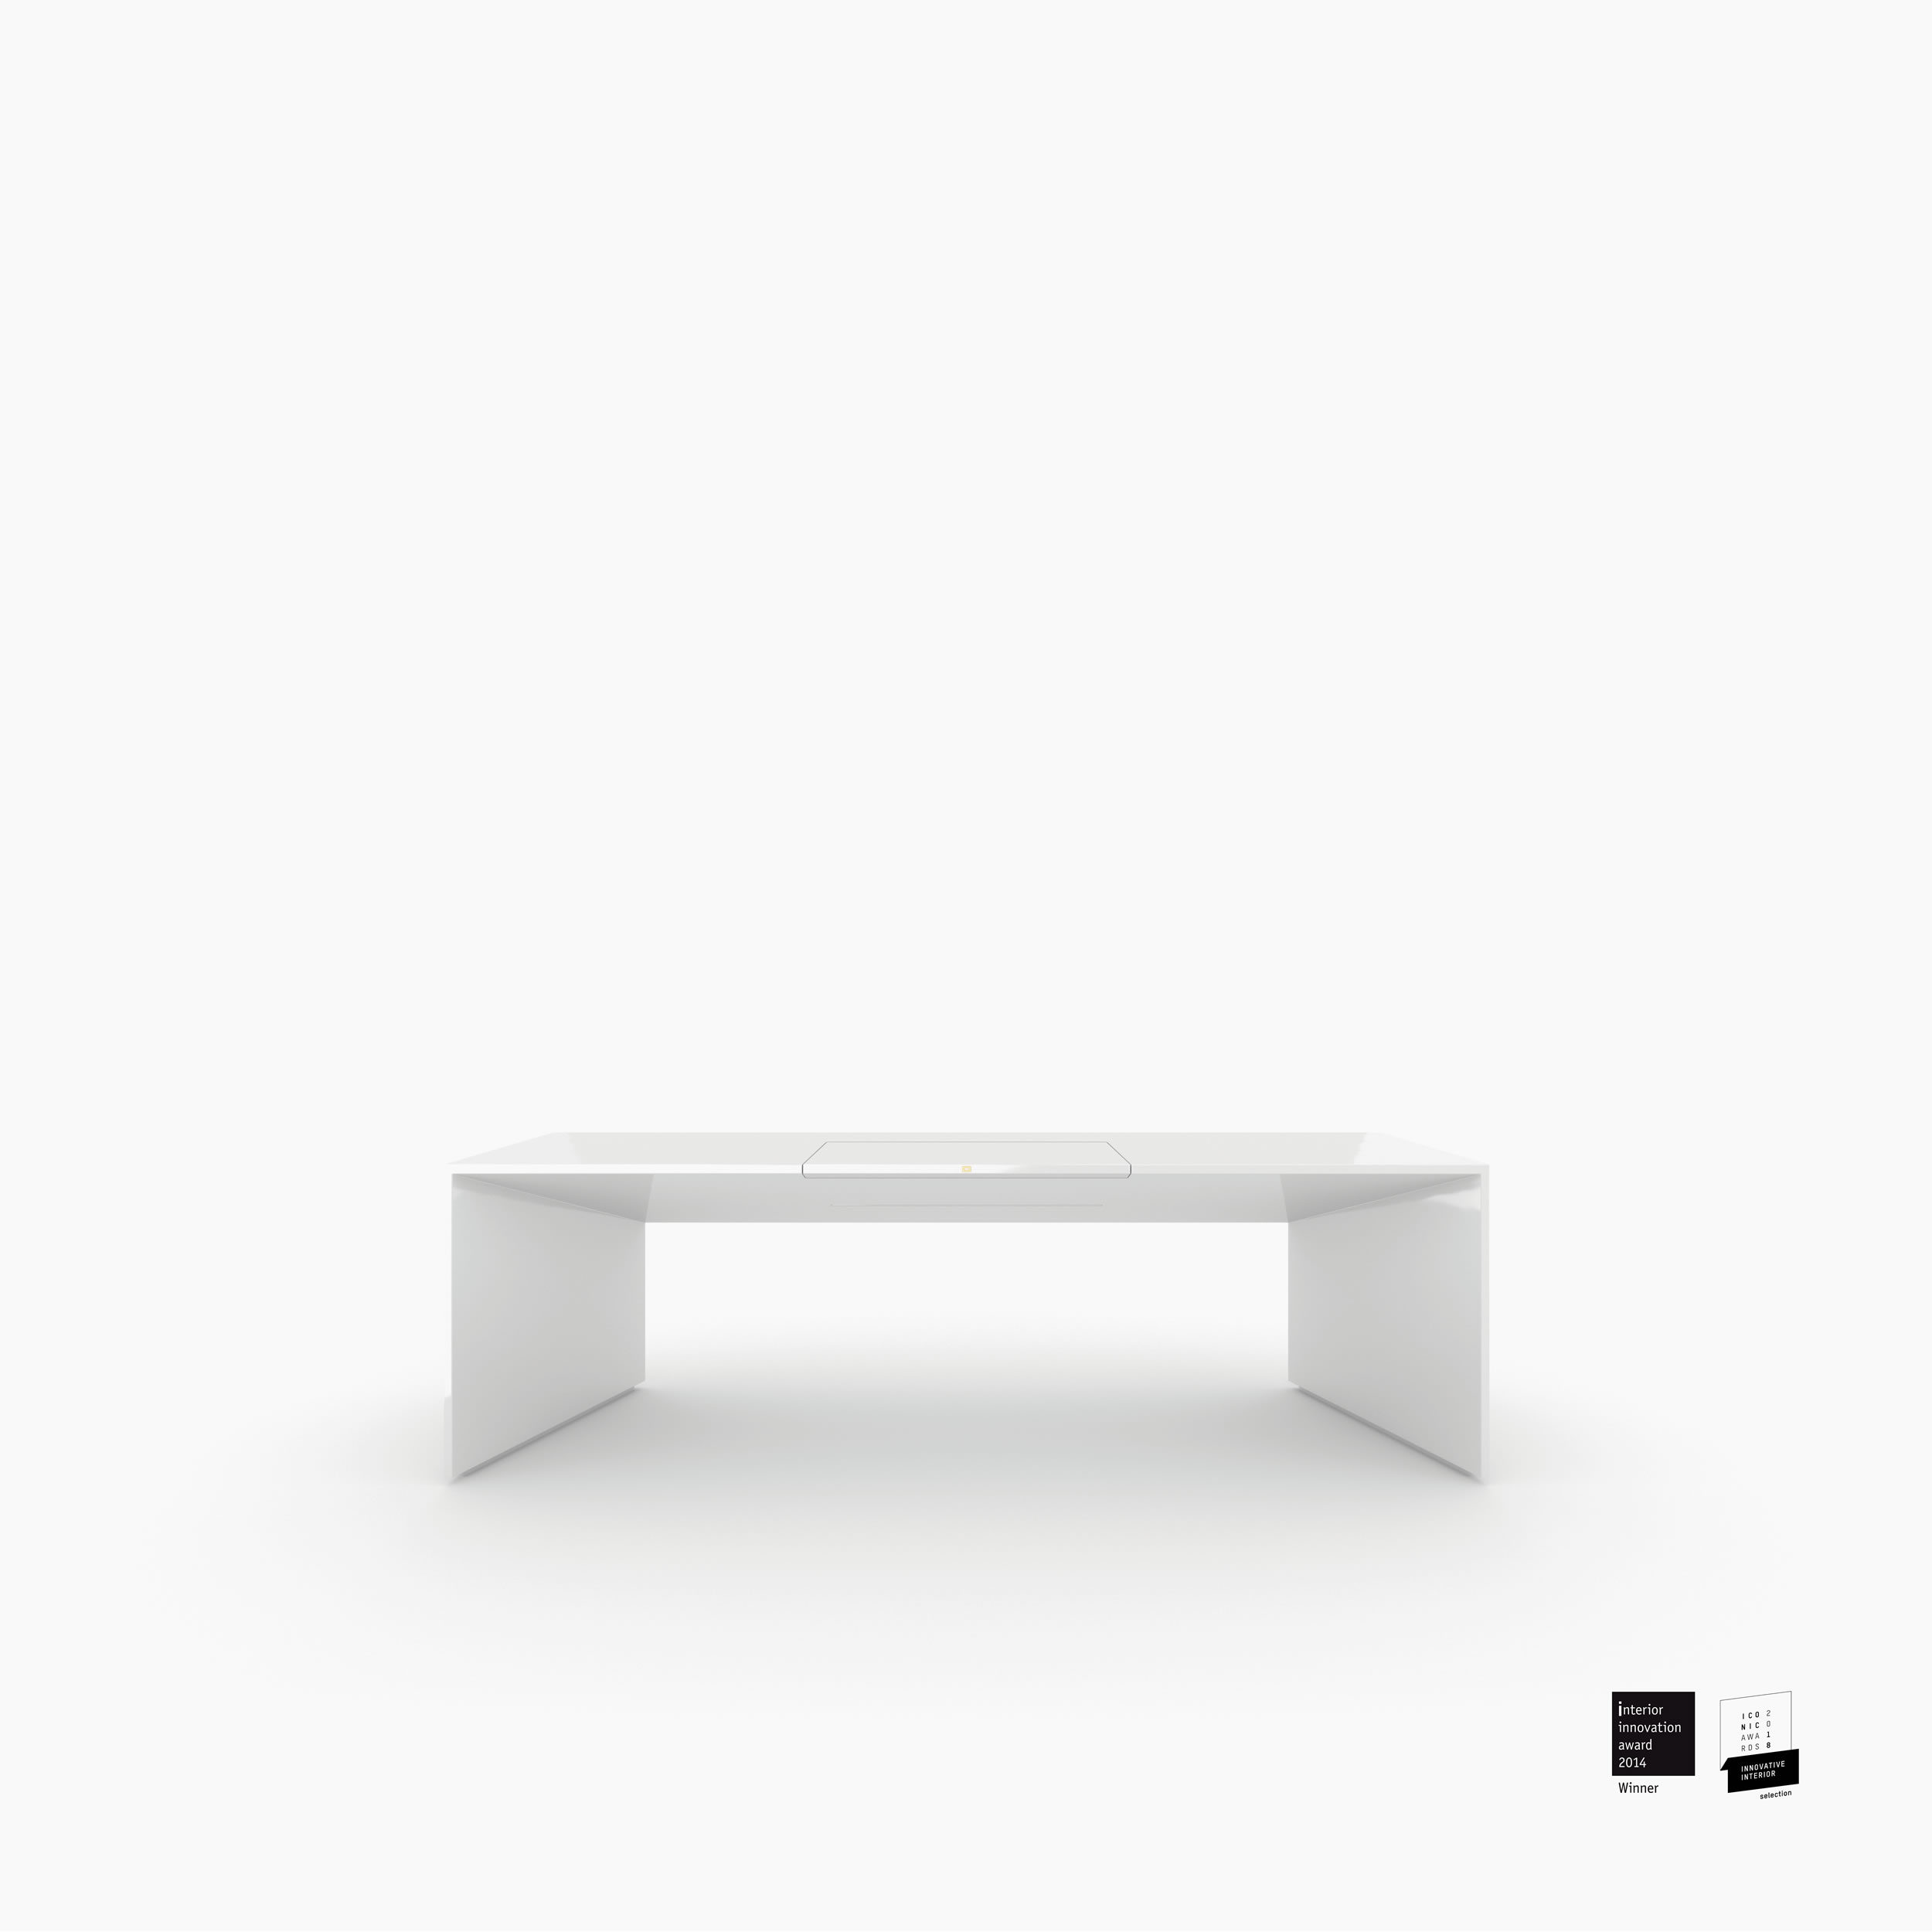 Schreibtischig weiss white room Chefzimmer sculptural furniture Schreibtische FS 89 FELIX SCHWAKE